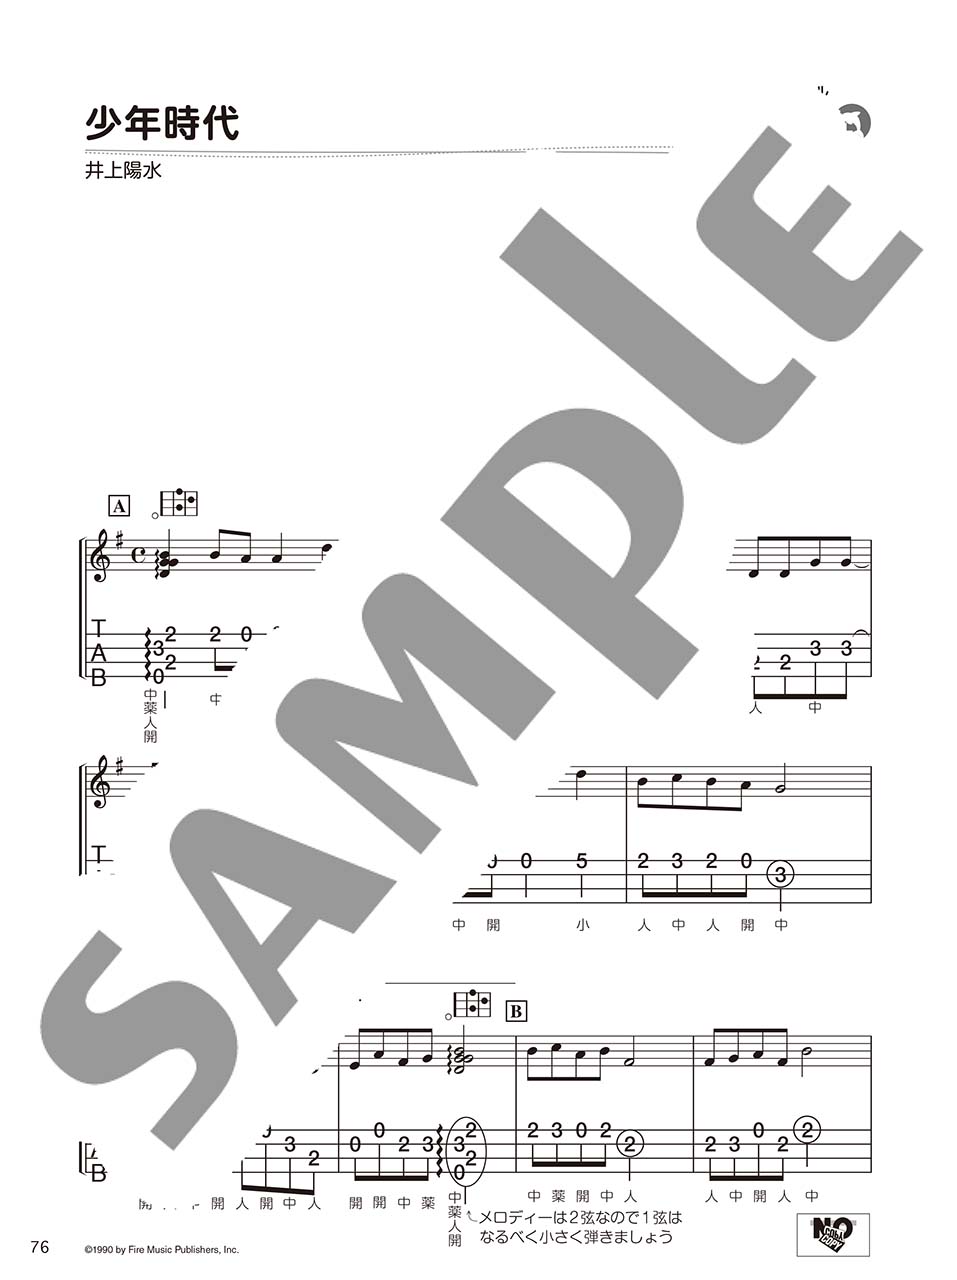 ヤマハ 超初級 初心者でもラクラク弾ける かんたんソロウクレレ30 J Pop編 楽譜 ウクレレ ヤマハの楽譜出版